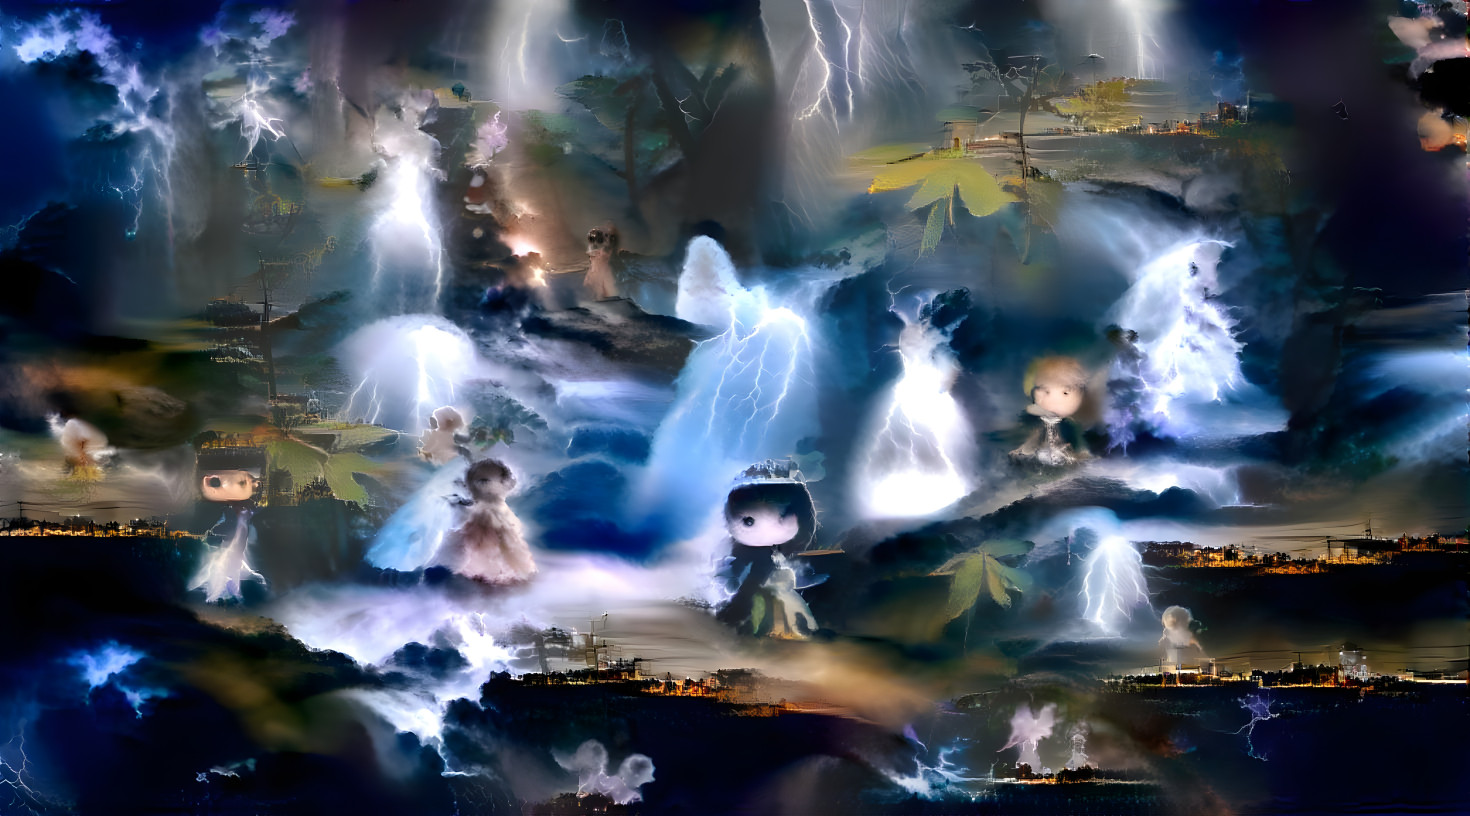 fairies in a storm